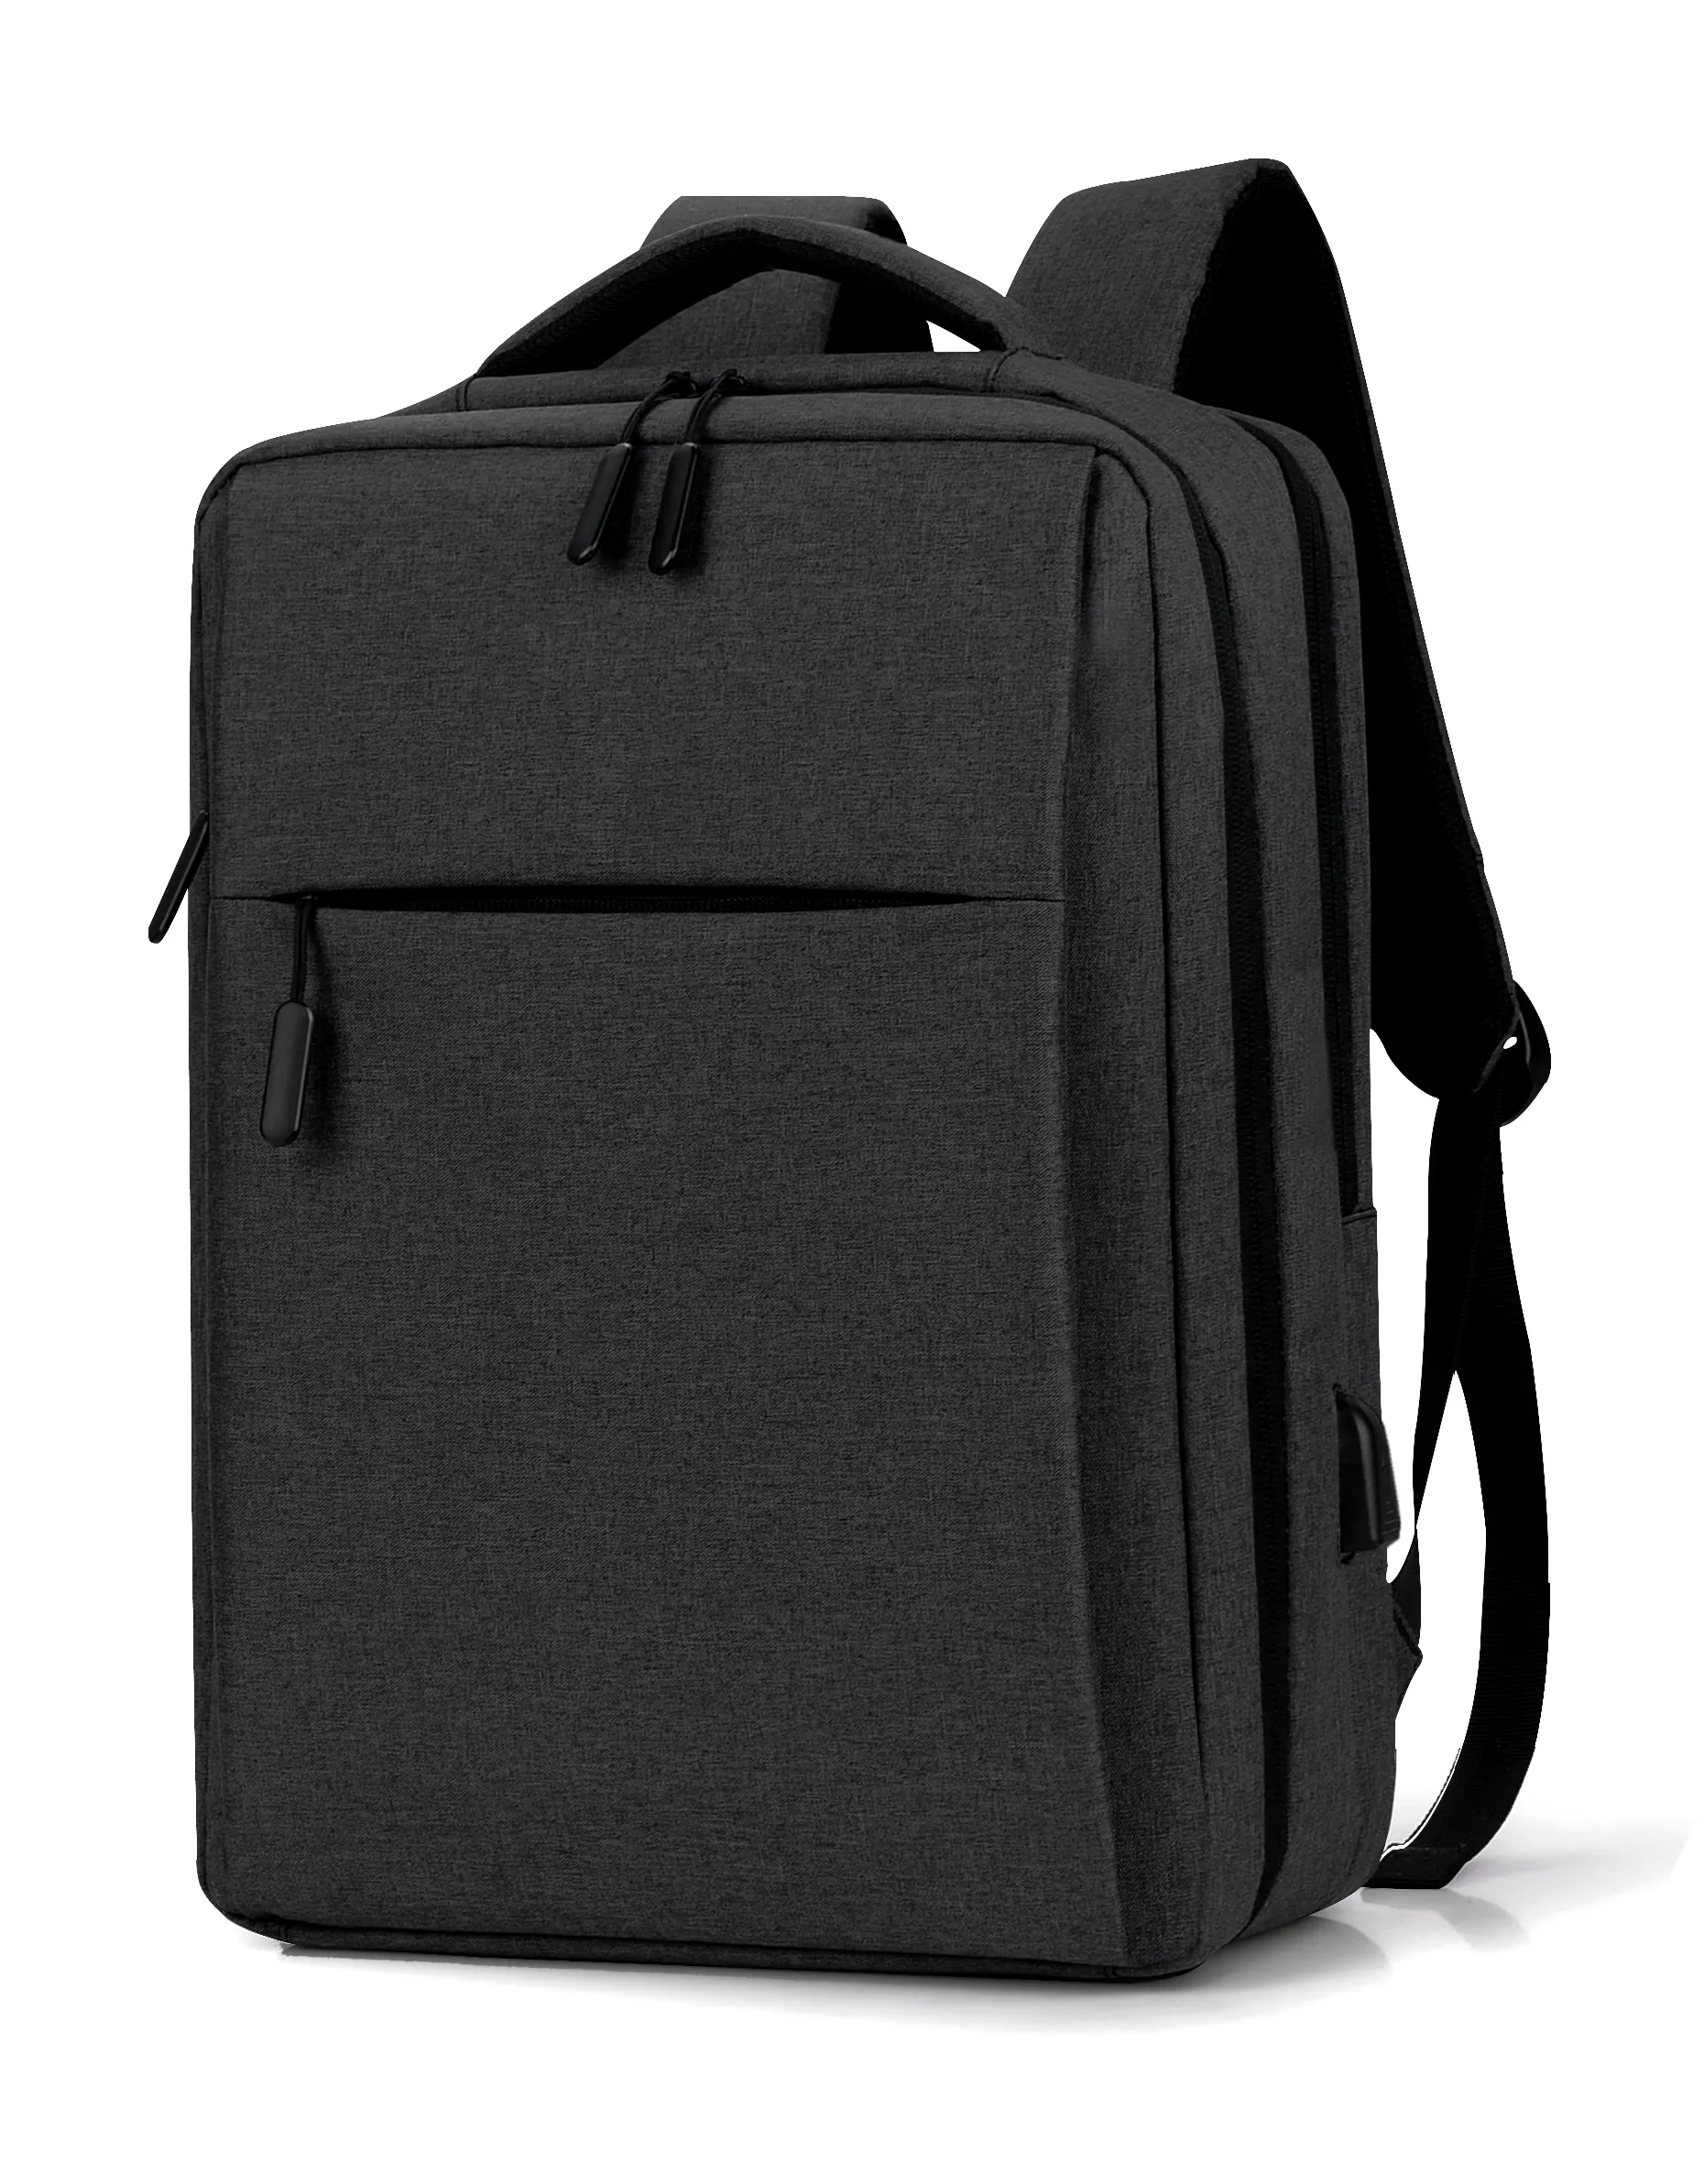 Mochila inteligente unissex com carregamento usb, bolsa leve masculina compacta feita em tecido impermeável com tecnologia à prova de furtos, ideal para estudantes de faculdade